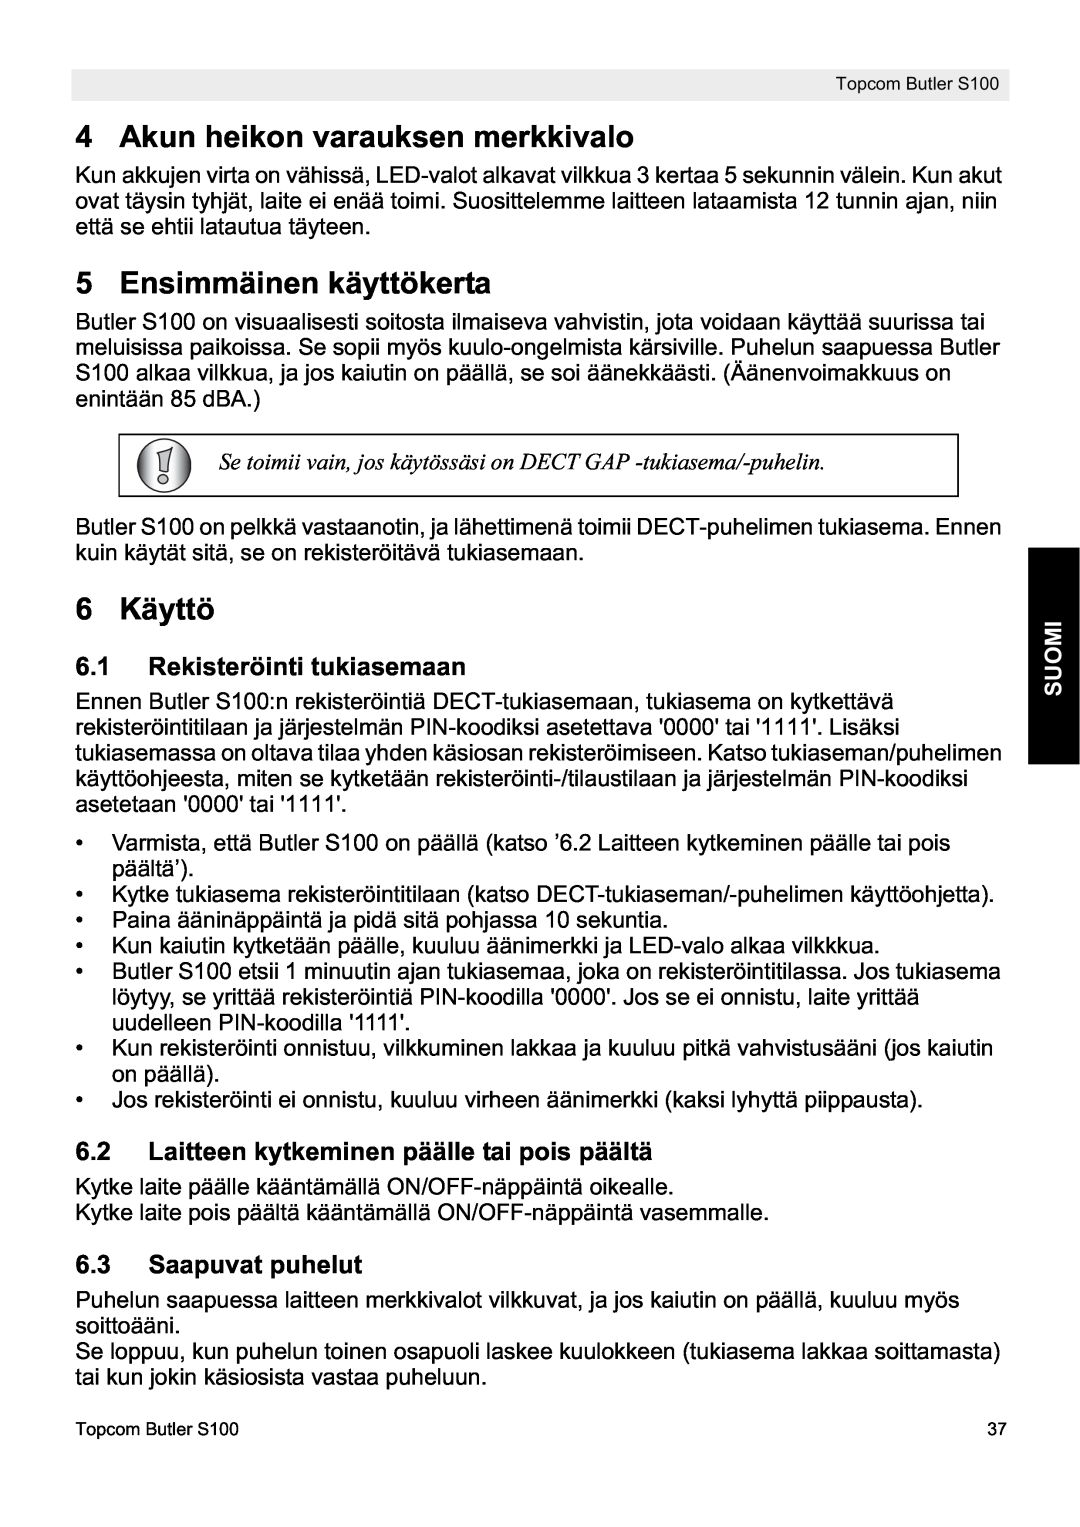 Topcom S100 Akun heikon varauksen merkkivalo, Ensimmäinen käyttökerta, 6 Käyttö, Rekisteröinti tukiasemaan, Suomi 